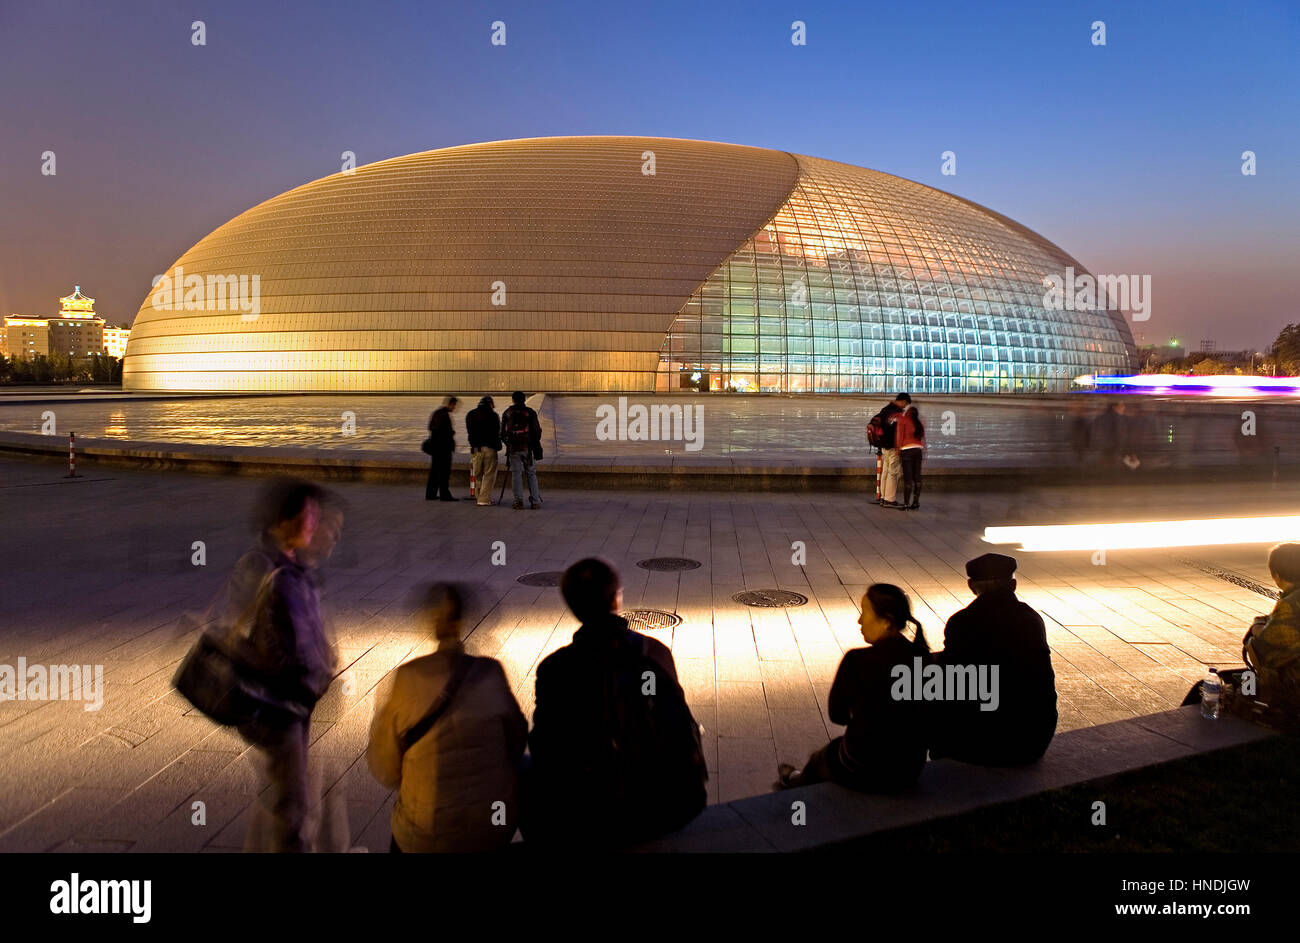 Opéra national de bâtiment (Paul Andreu Architecte), Beijing, Chine Banque D'Images